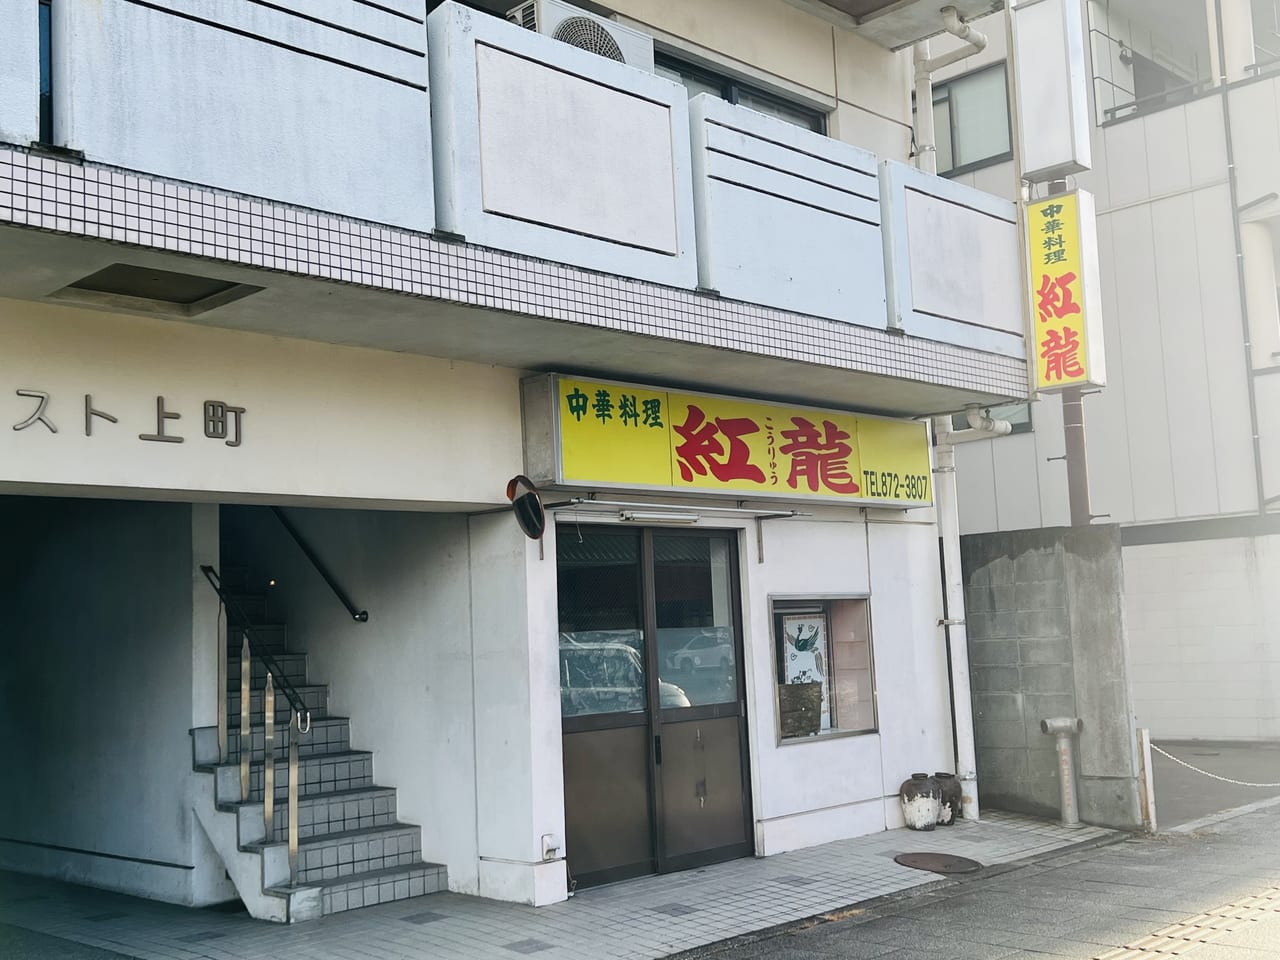 閉店した高知市上町の老舗中華料理店「紅龍」の外観